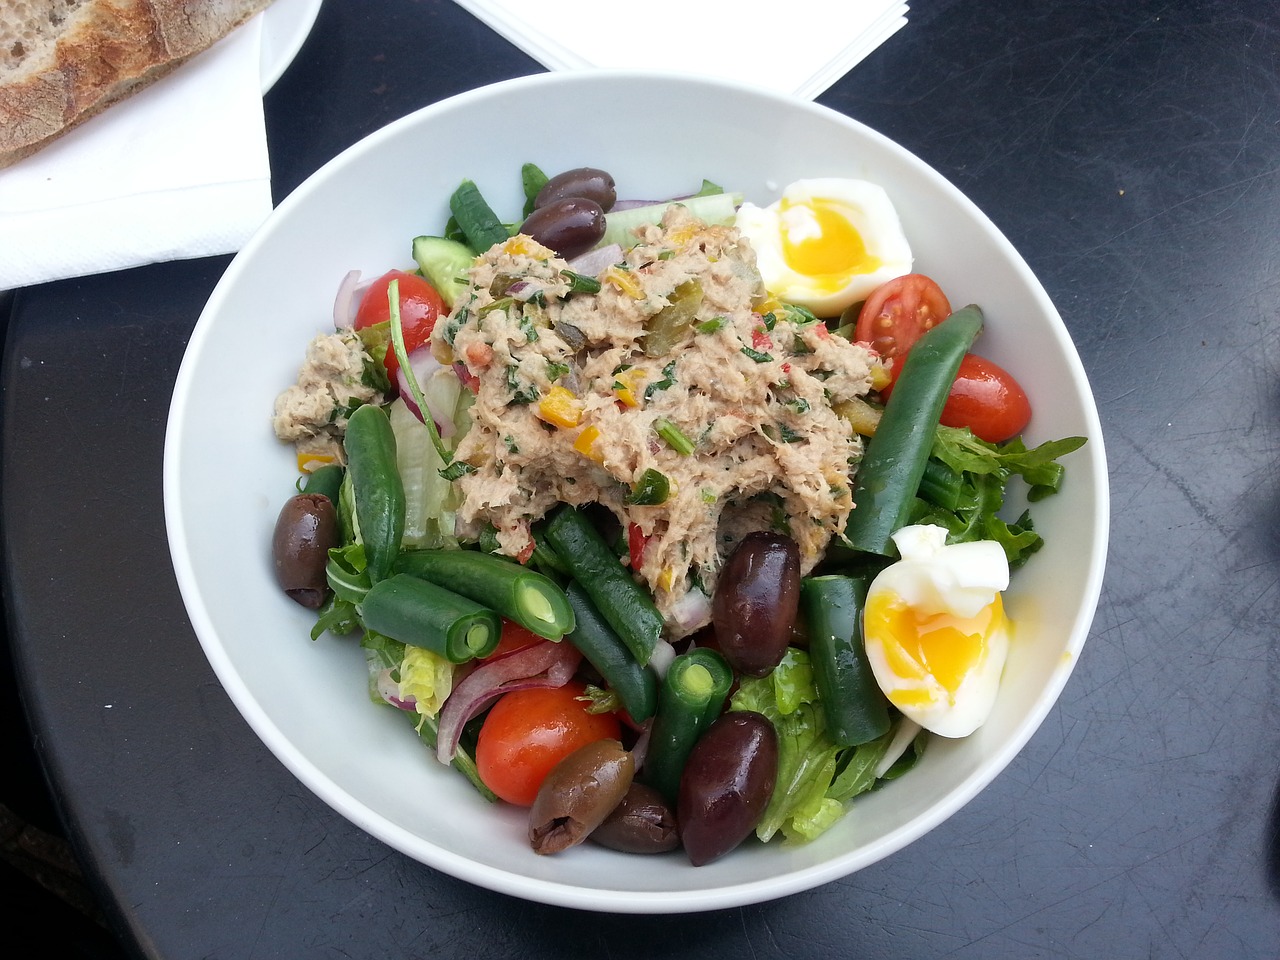 Simple Tuna Salad